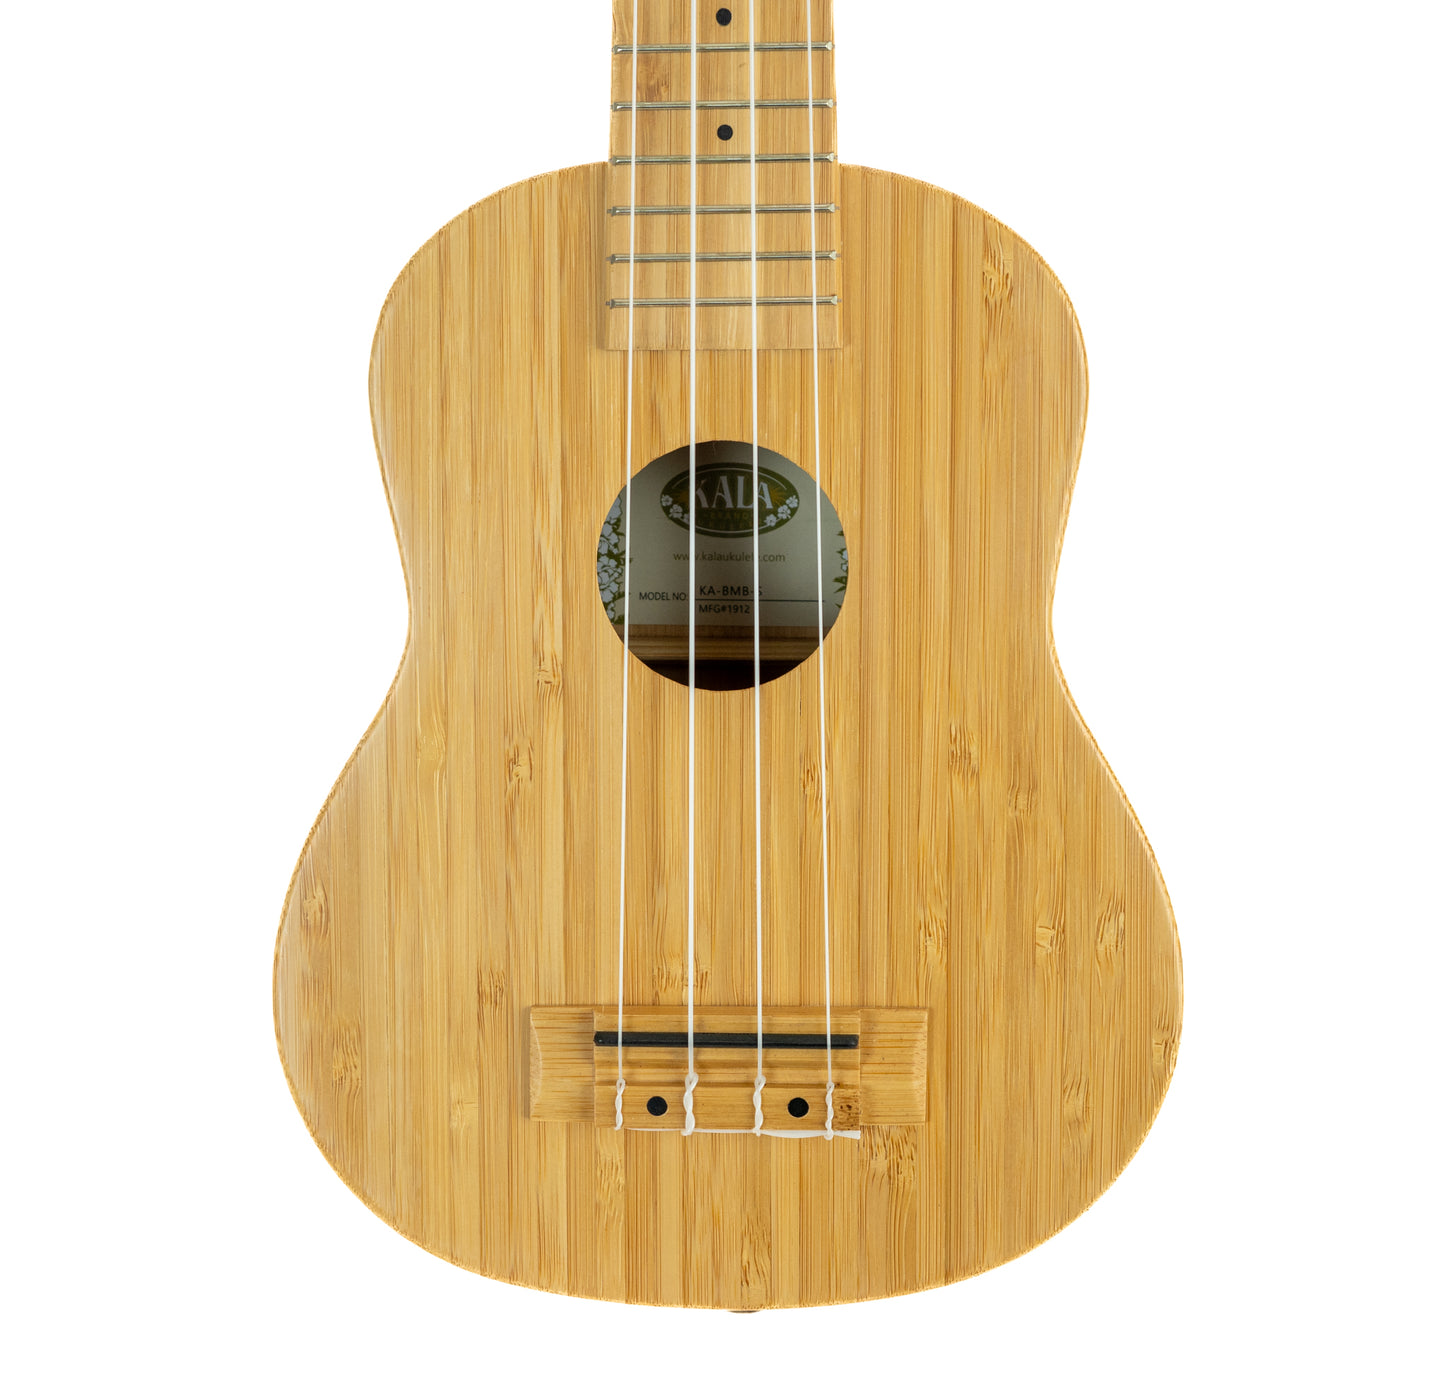 Kala all solid bamboo soprano ukulele